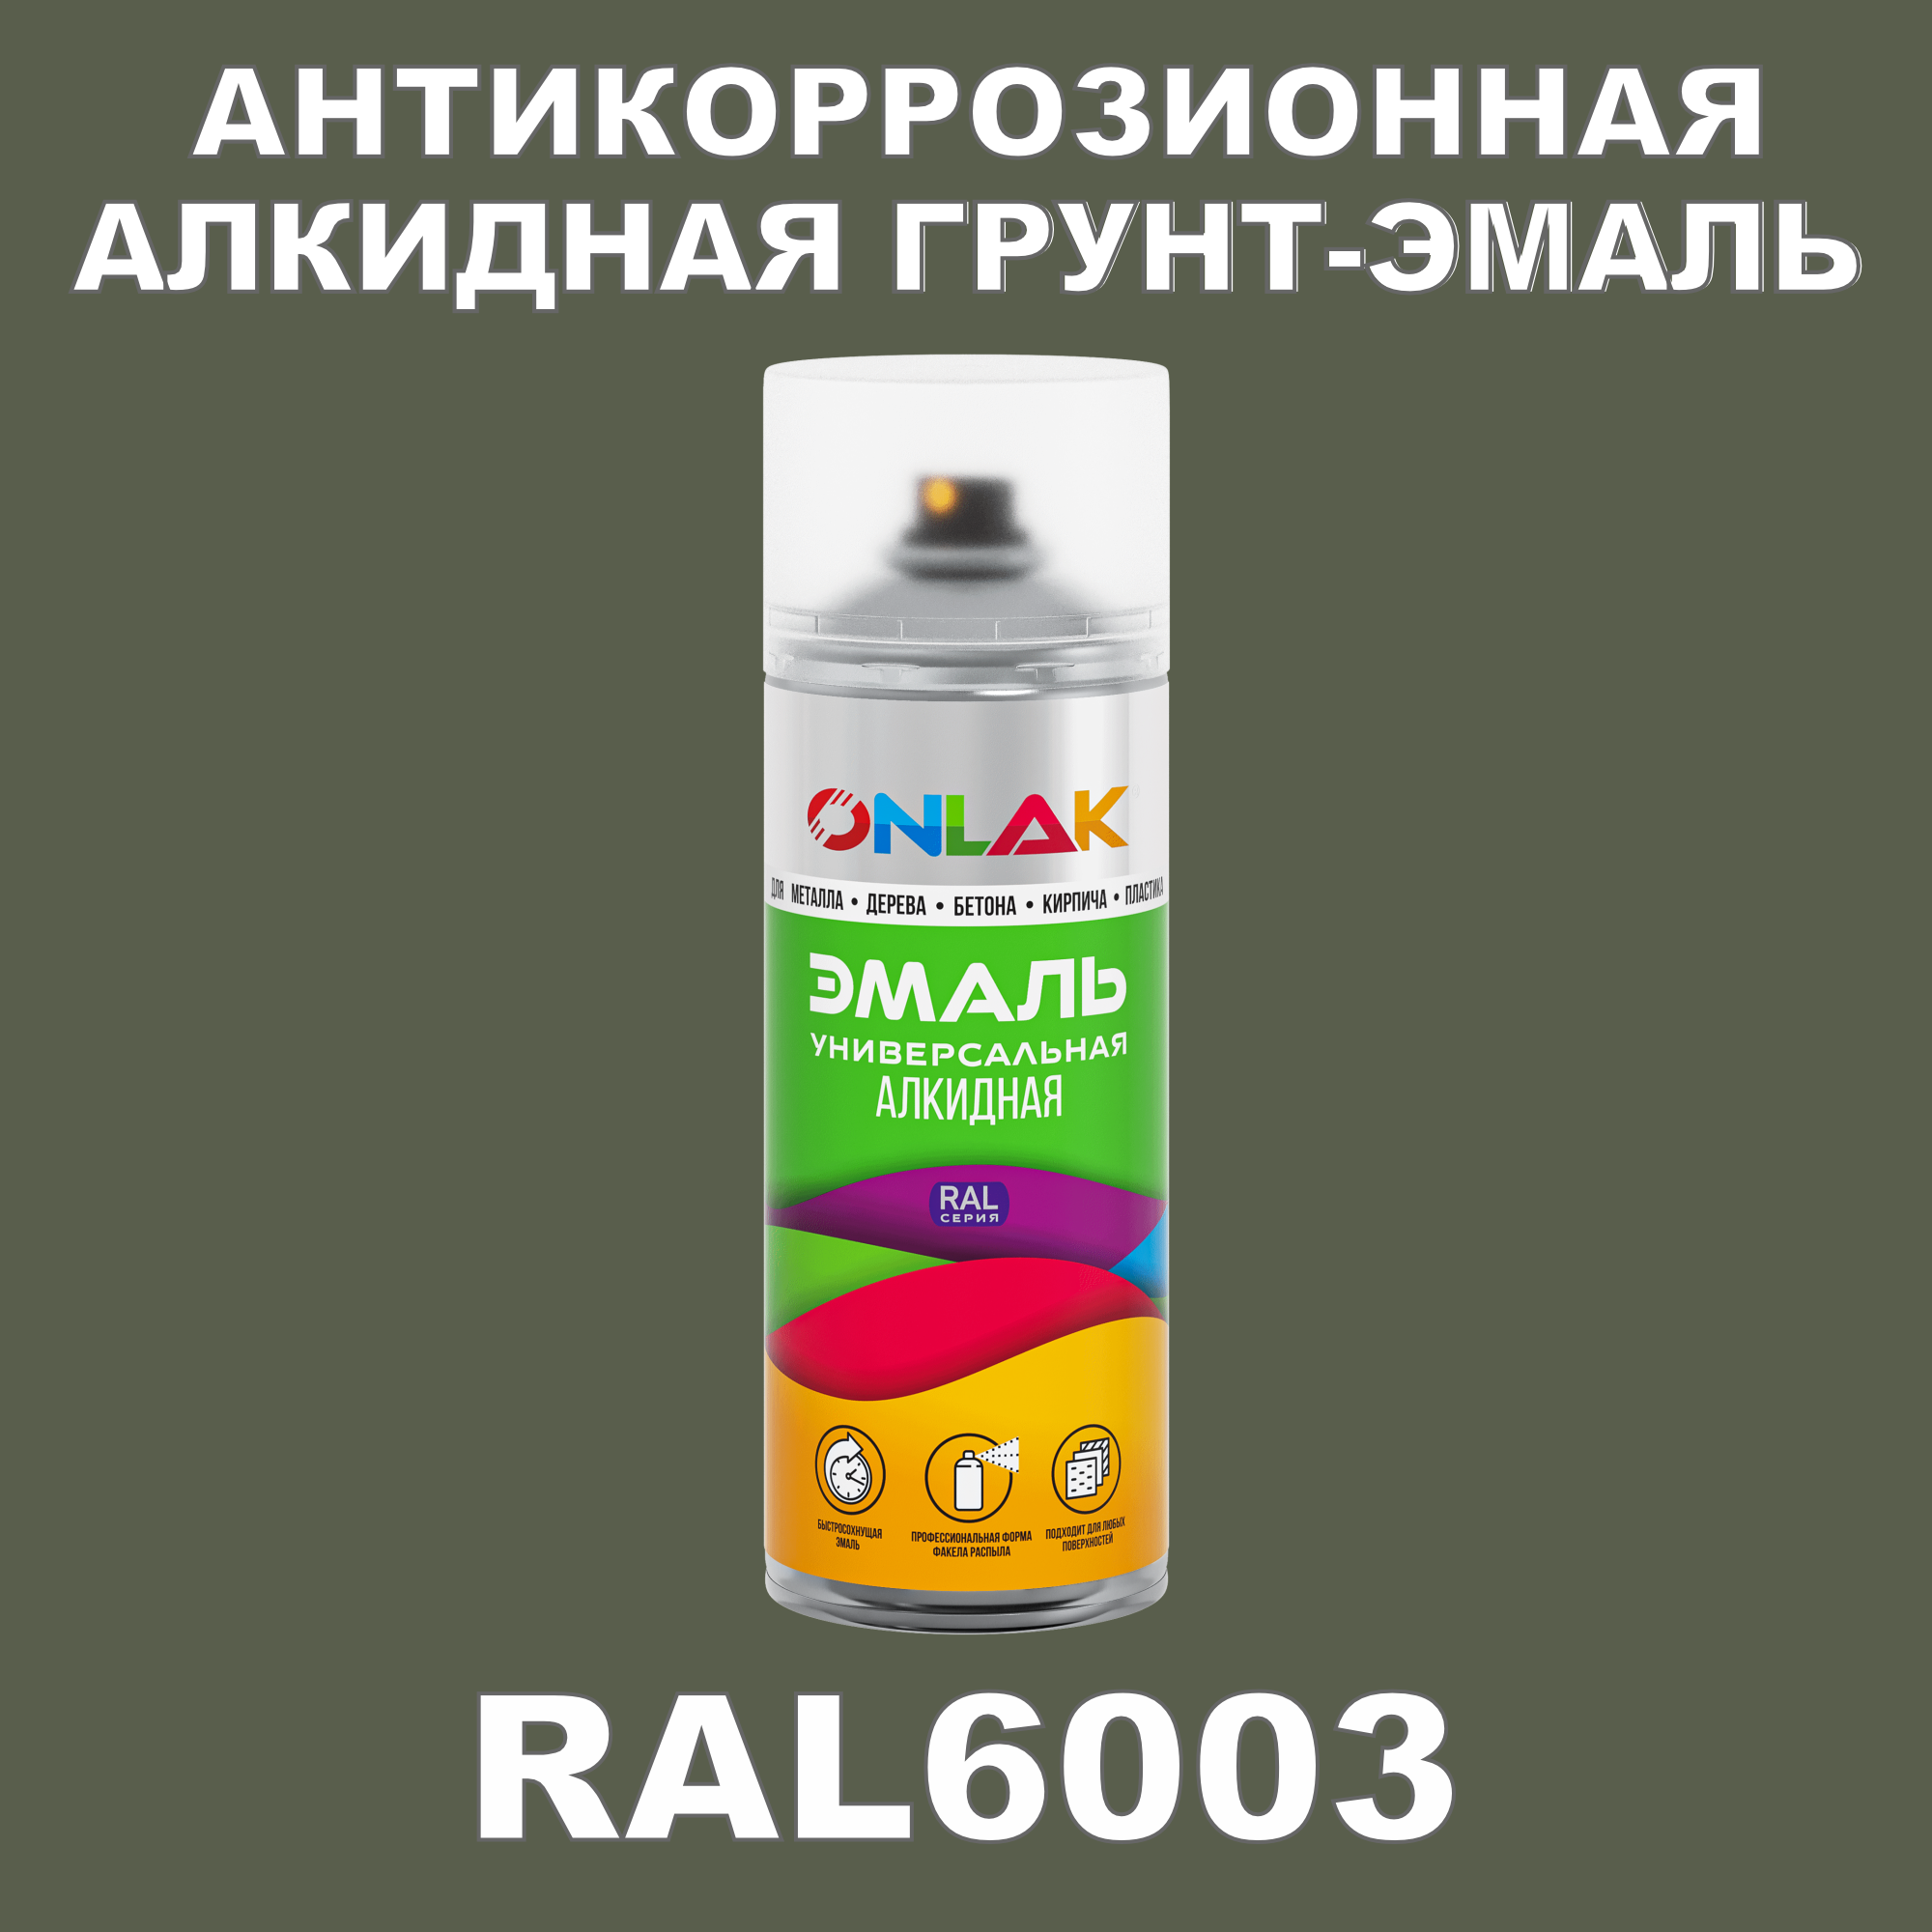 Антикоррозионная грунт-эмаль ONLAK RAL6003 полуматовая для металла и защиты от ржавчины грунт эмаль по ржавчине 3в1 picante triomix полуматовая ral 1015 бежевая 0 75кг 10520 1015 bb